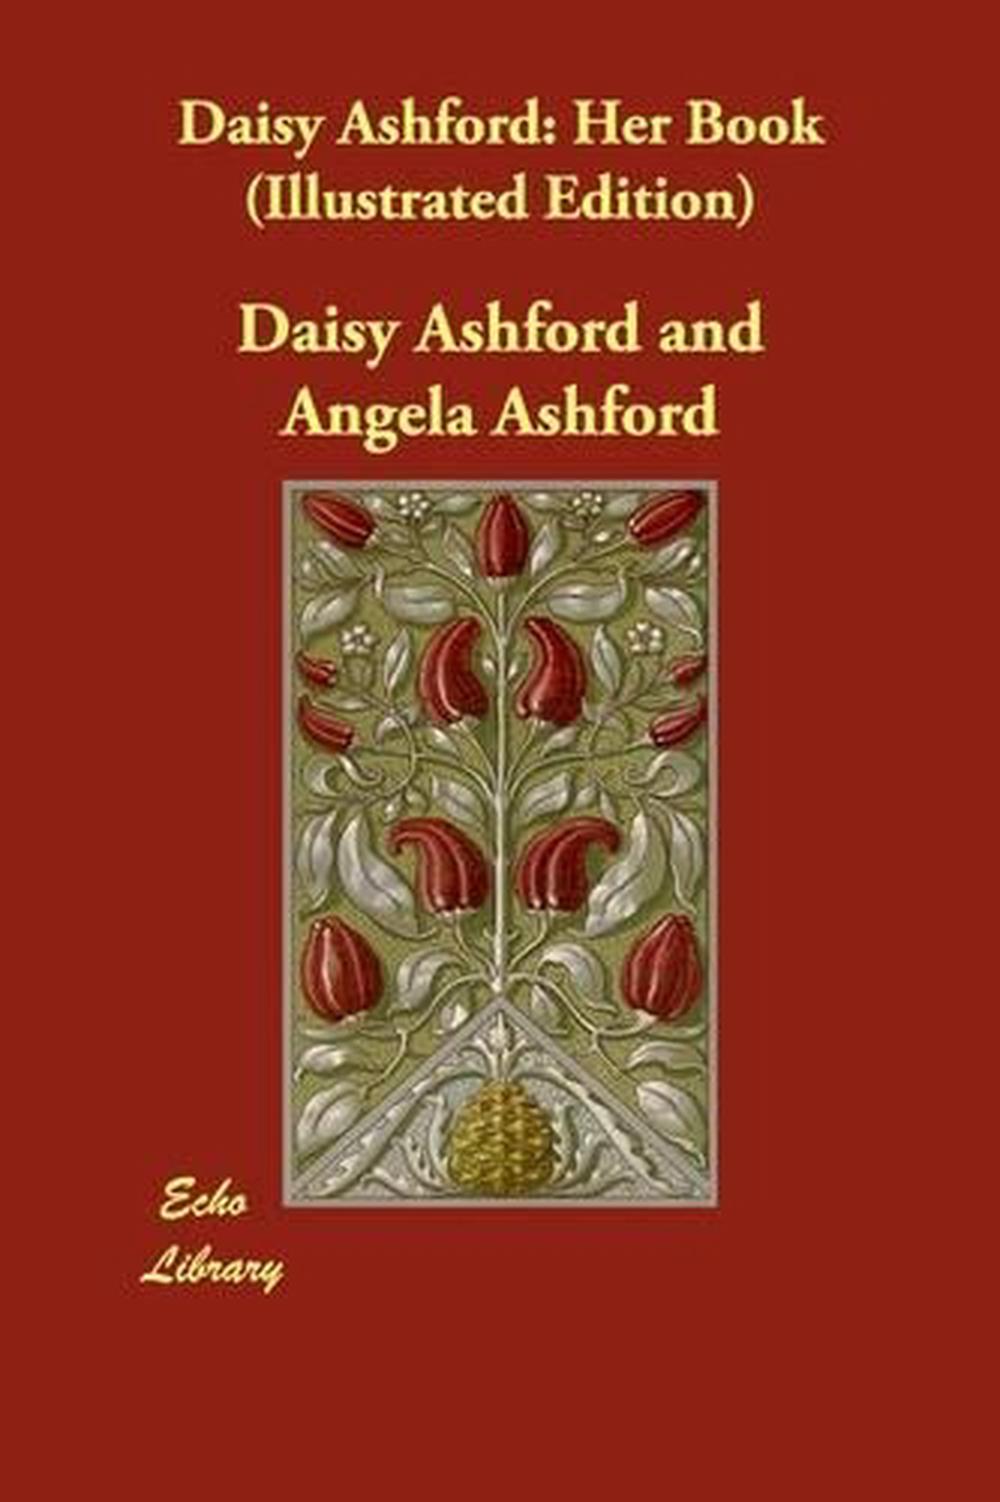 Daisy Ashford: Her Book (Illustrated Edition) by Daisy Ashford (English ...